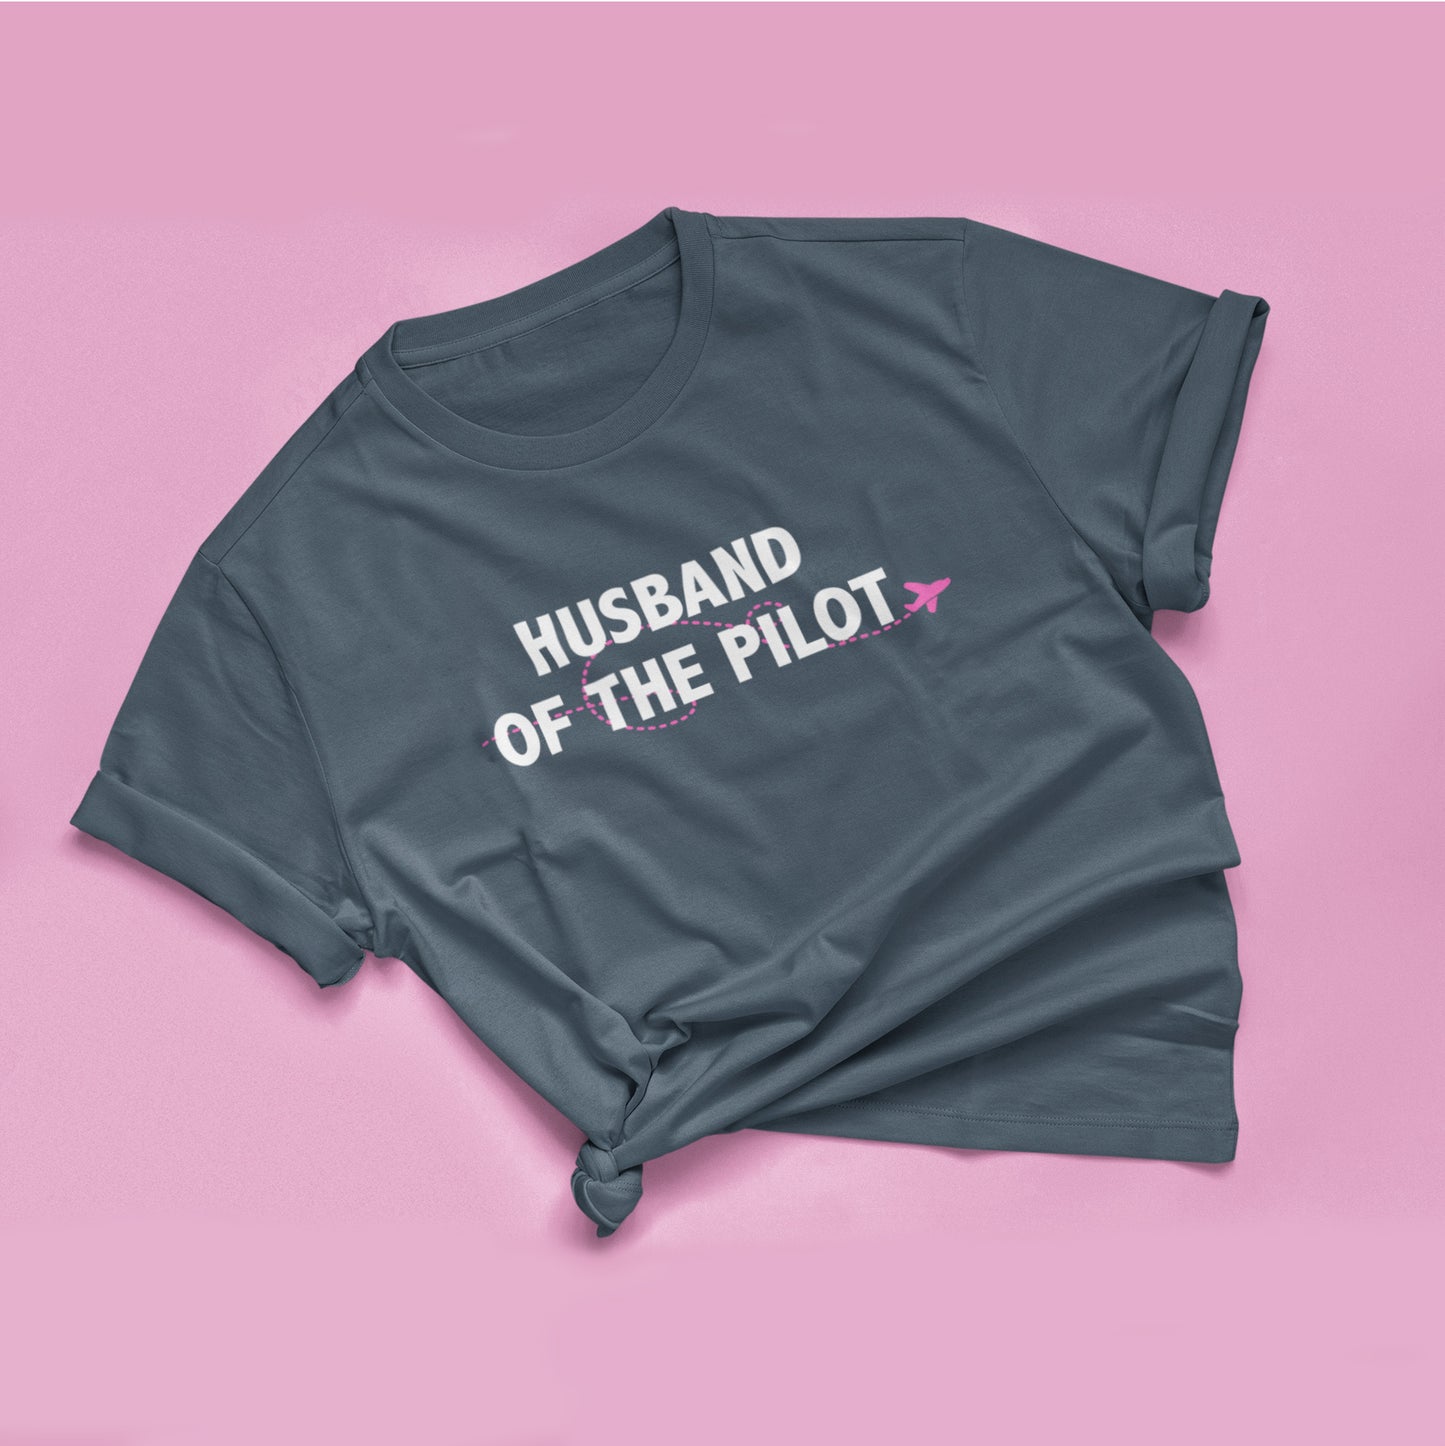 Husband of the/a Pilot T-shirt